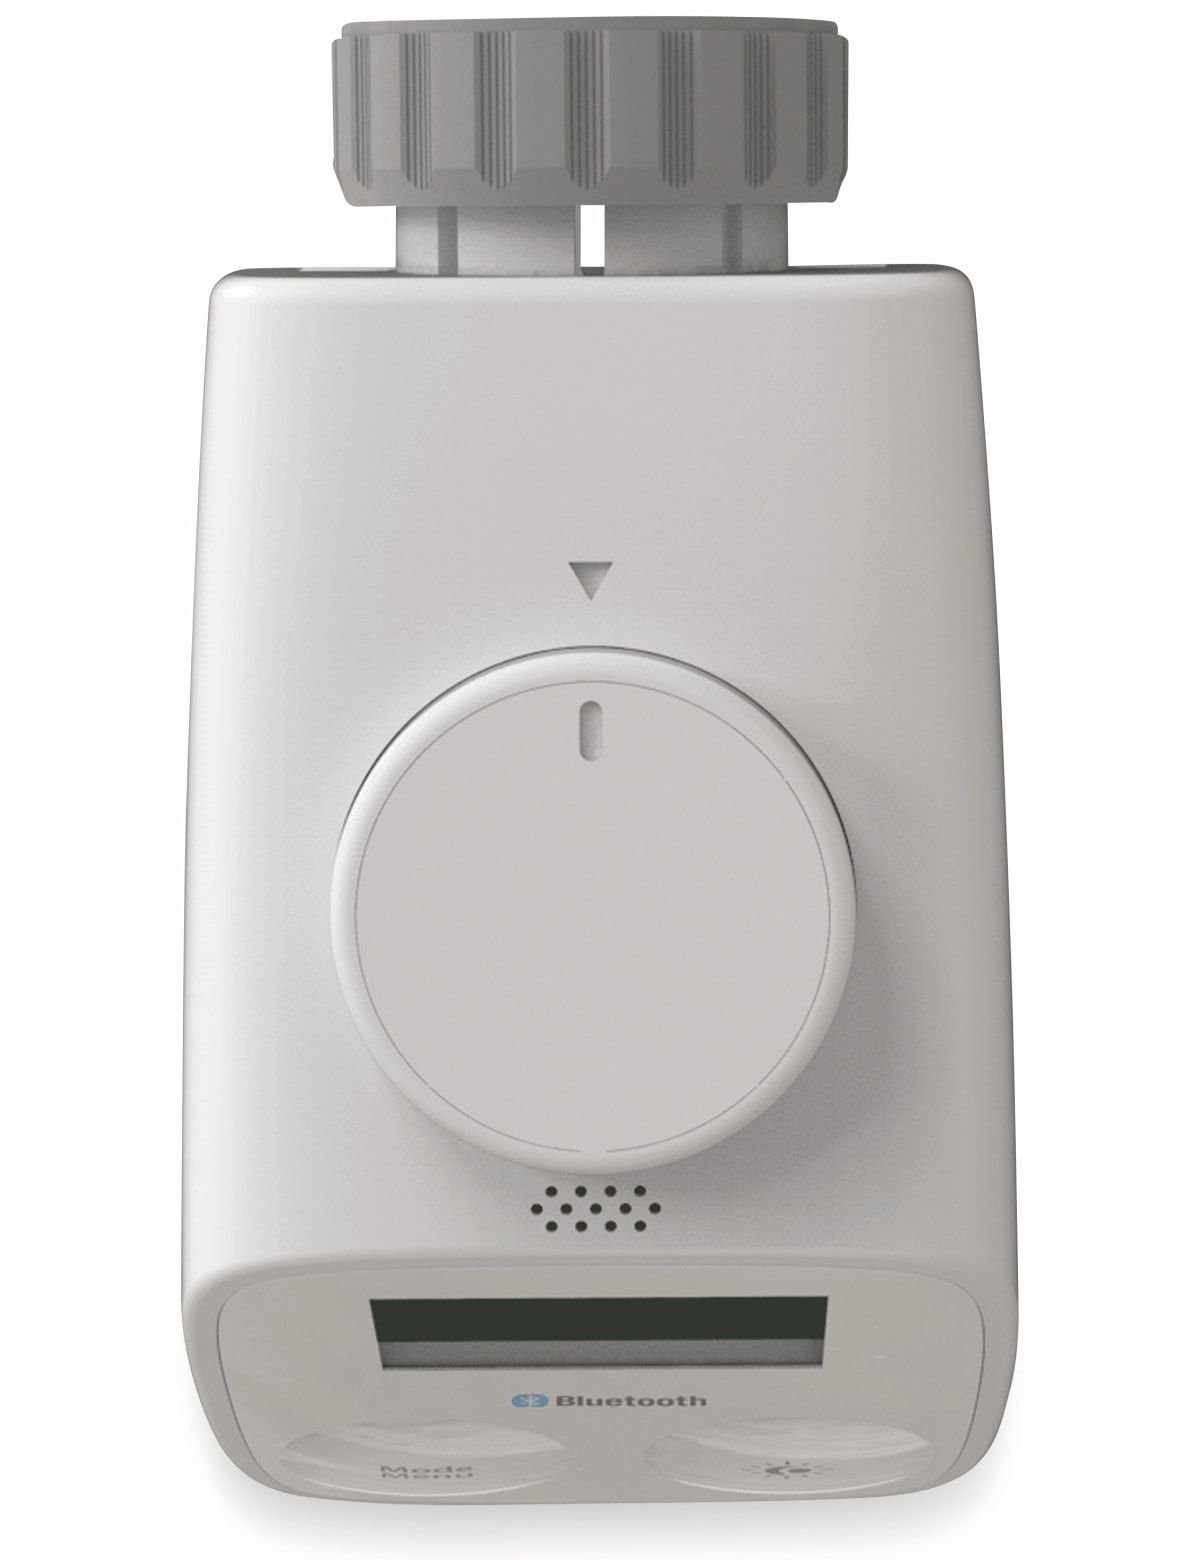 Essentials Heizkörperthermostat Bluetooth ESSENTIALS Heizkörper-Thermostat